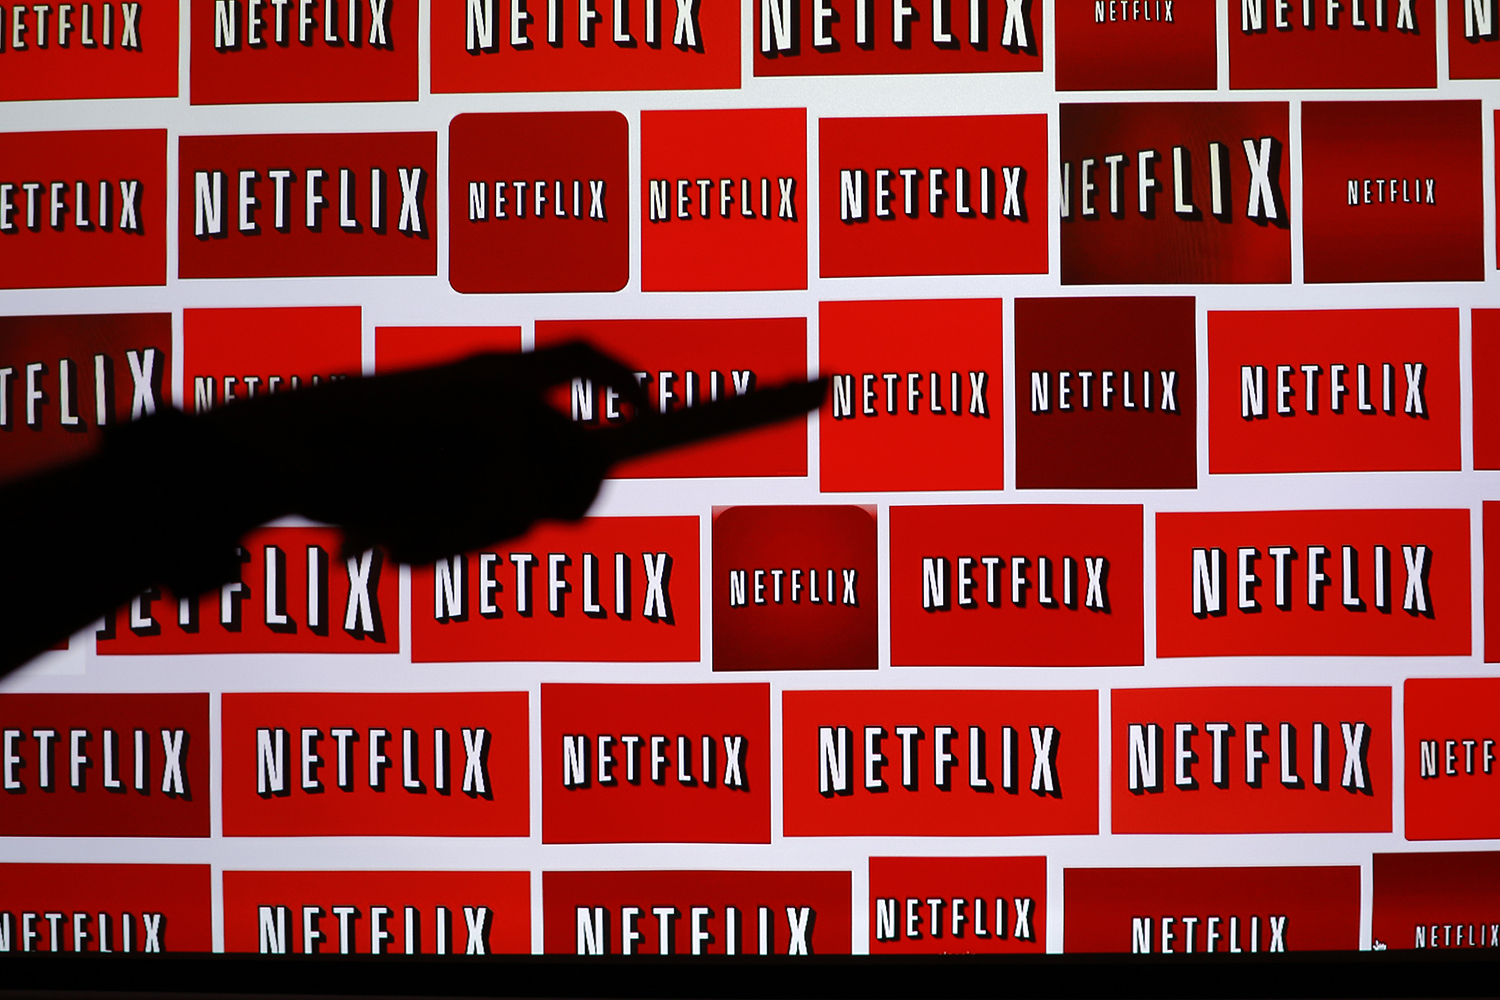 Netflix desembarcará en España en octubre